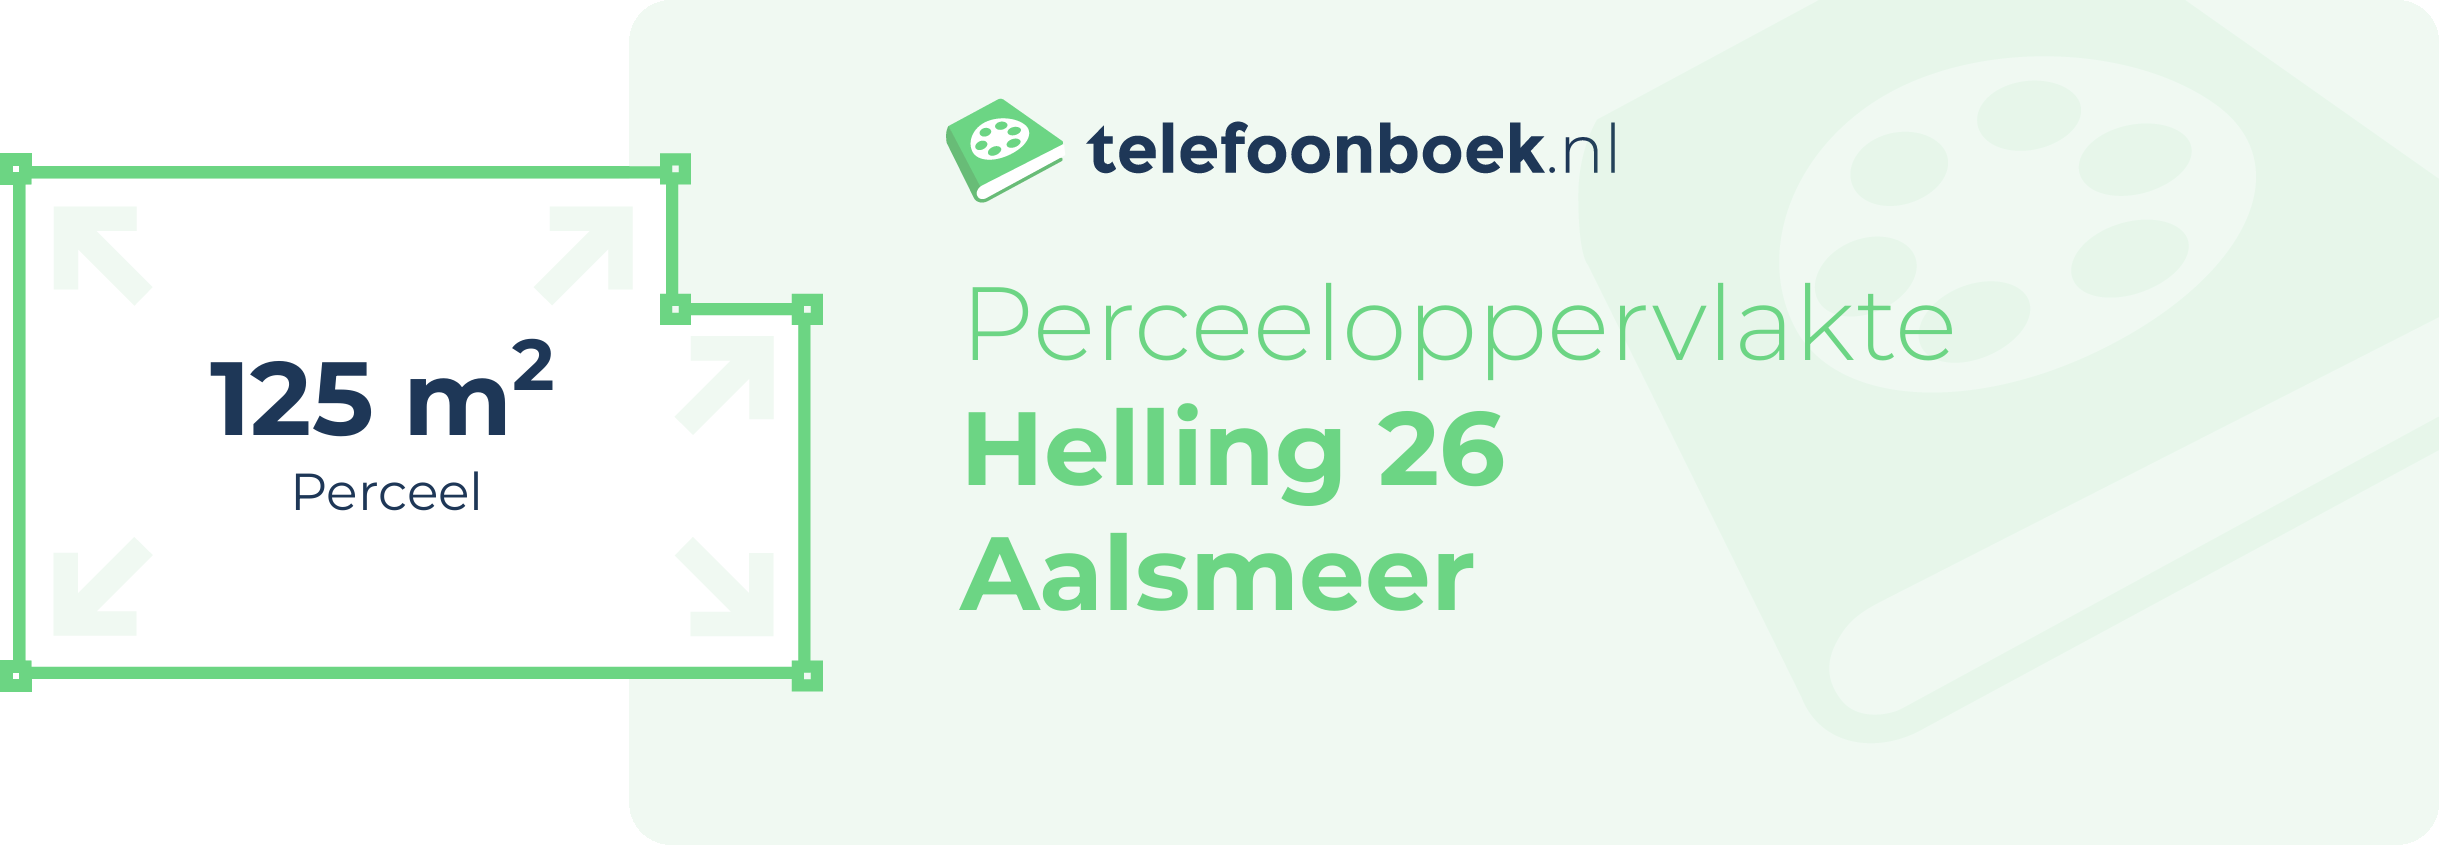 Perceeloppervlakte Helling 26 Aalsmeer